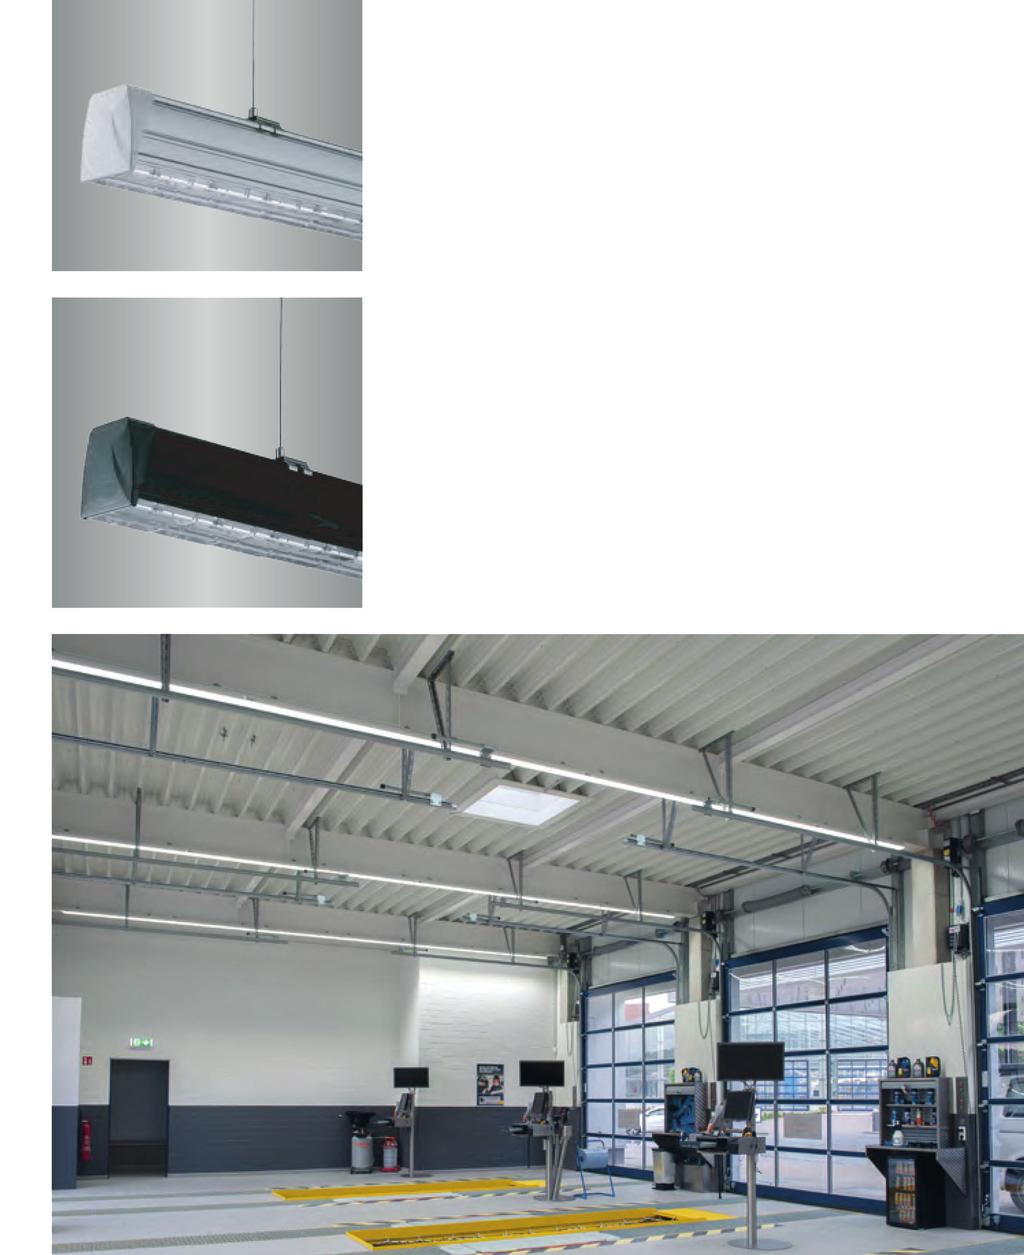 LED LICHTBAND IG-290 PROLINE Unser LED Lichtbandsystem IG-290 Proline ist eine energieeffiziente, wartungsarme Lichtlösung und mehr als eine Alternative zu traditionellen Lichtbändern mit